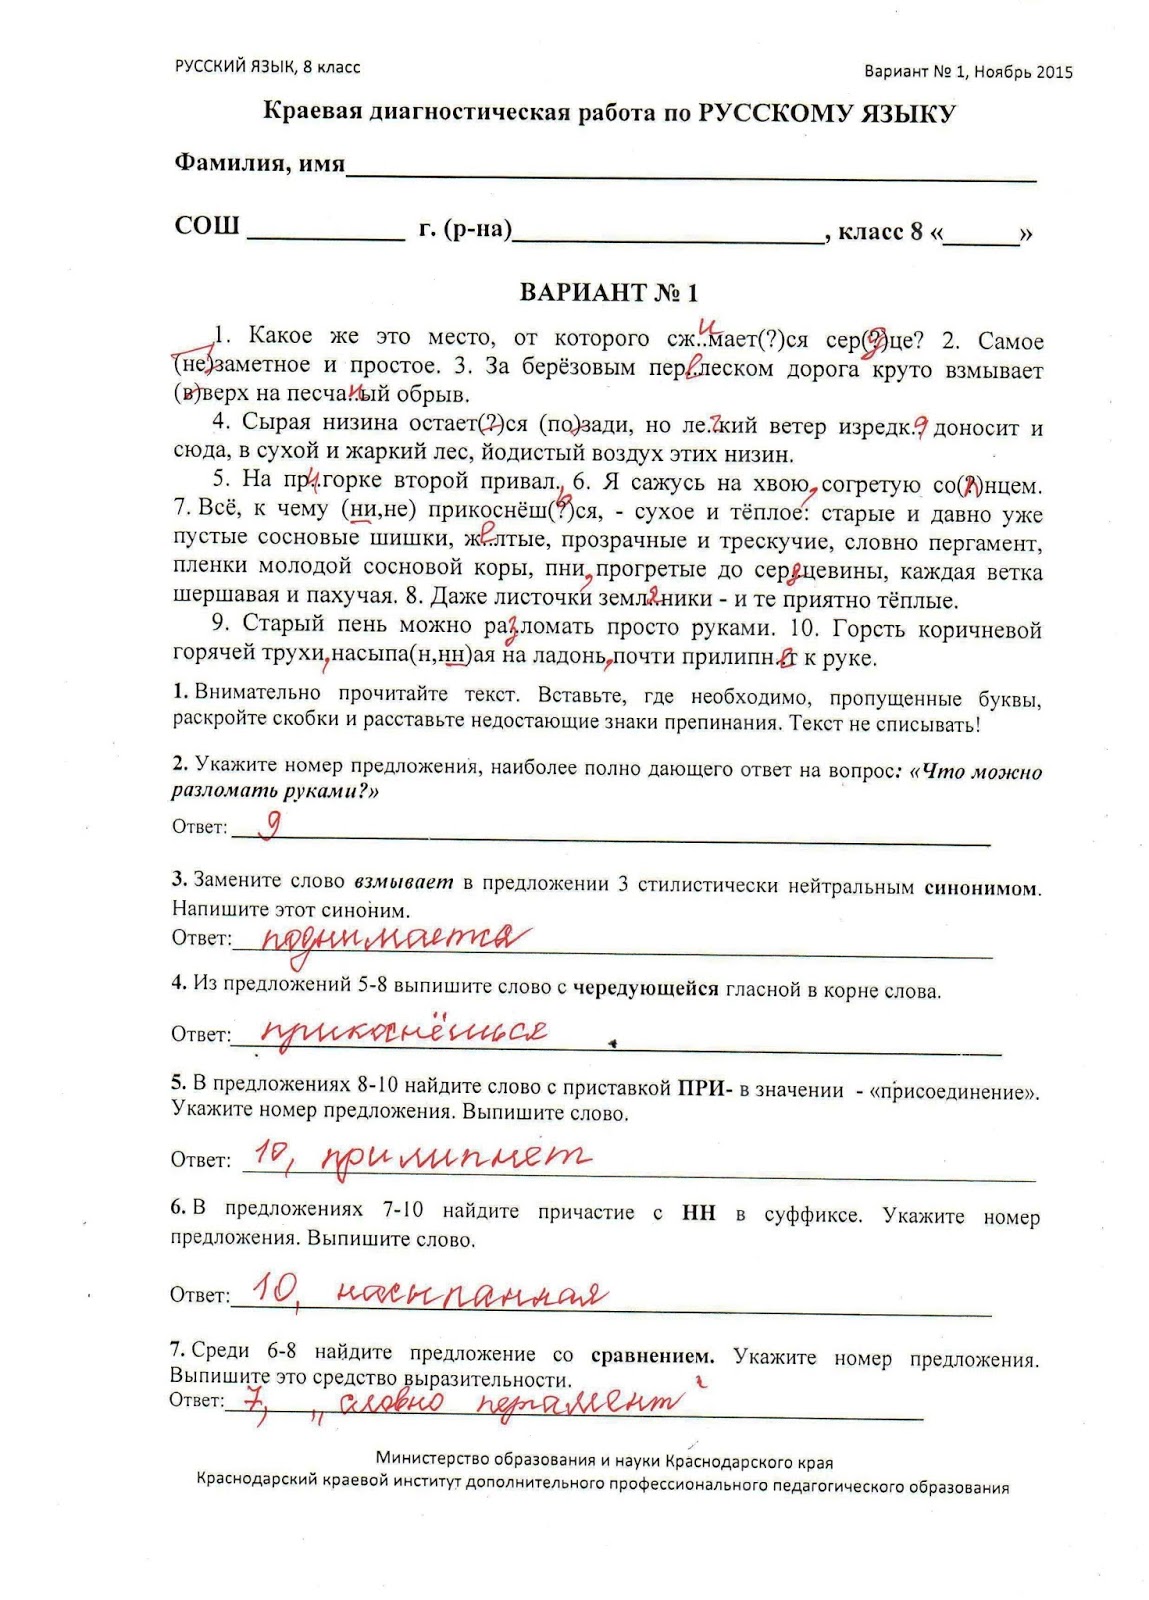 диагностическая работа по русскому языку 8 класс май